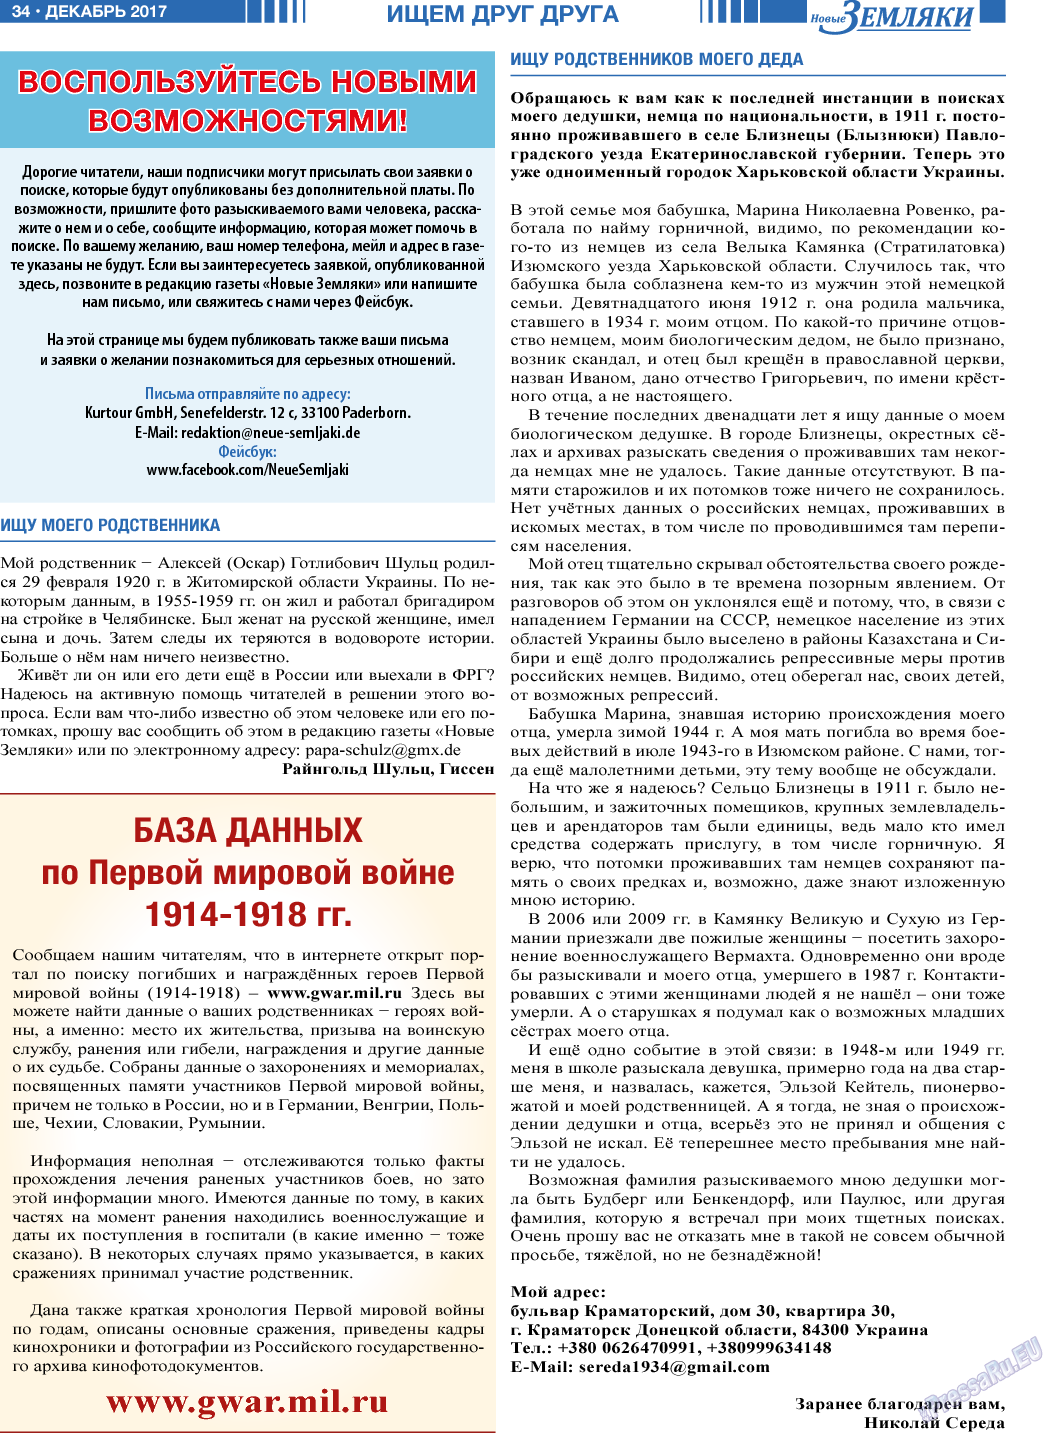 Новые Земляки, газета. 2017 №12 стр.34